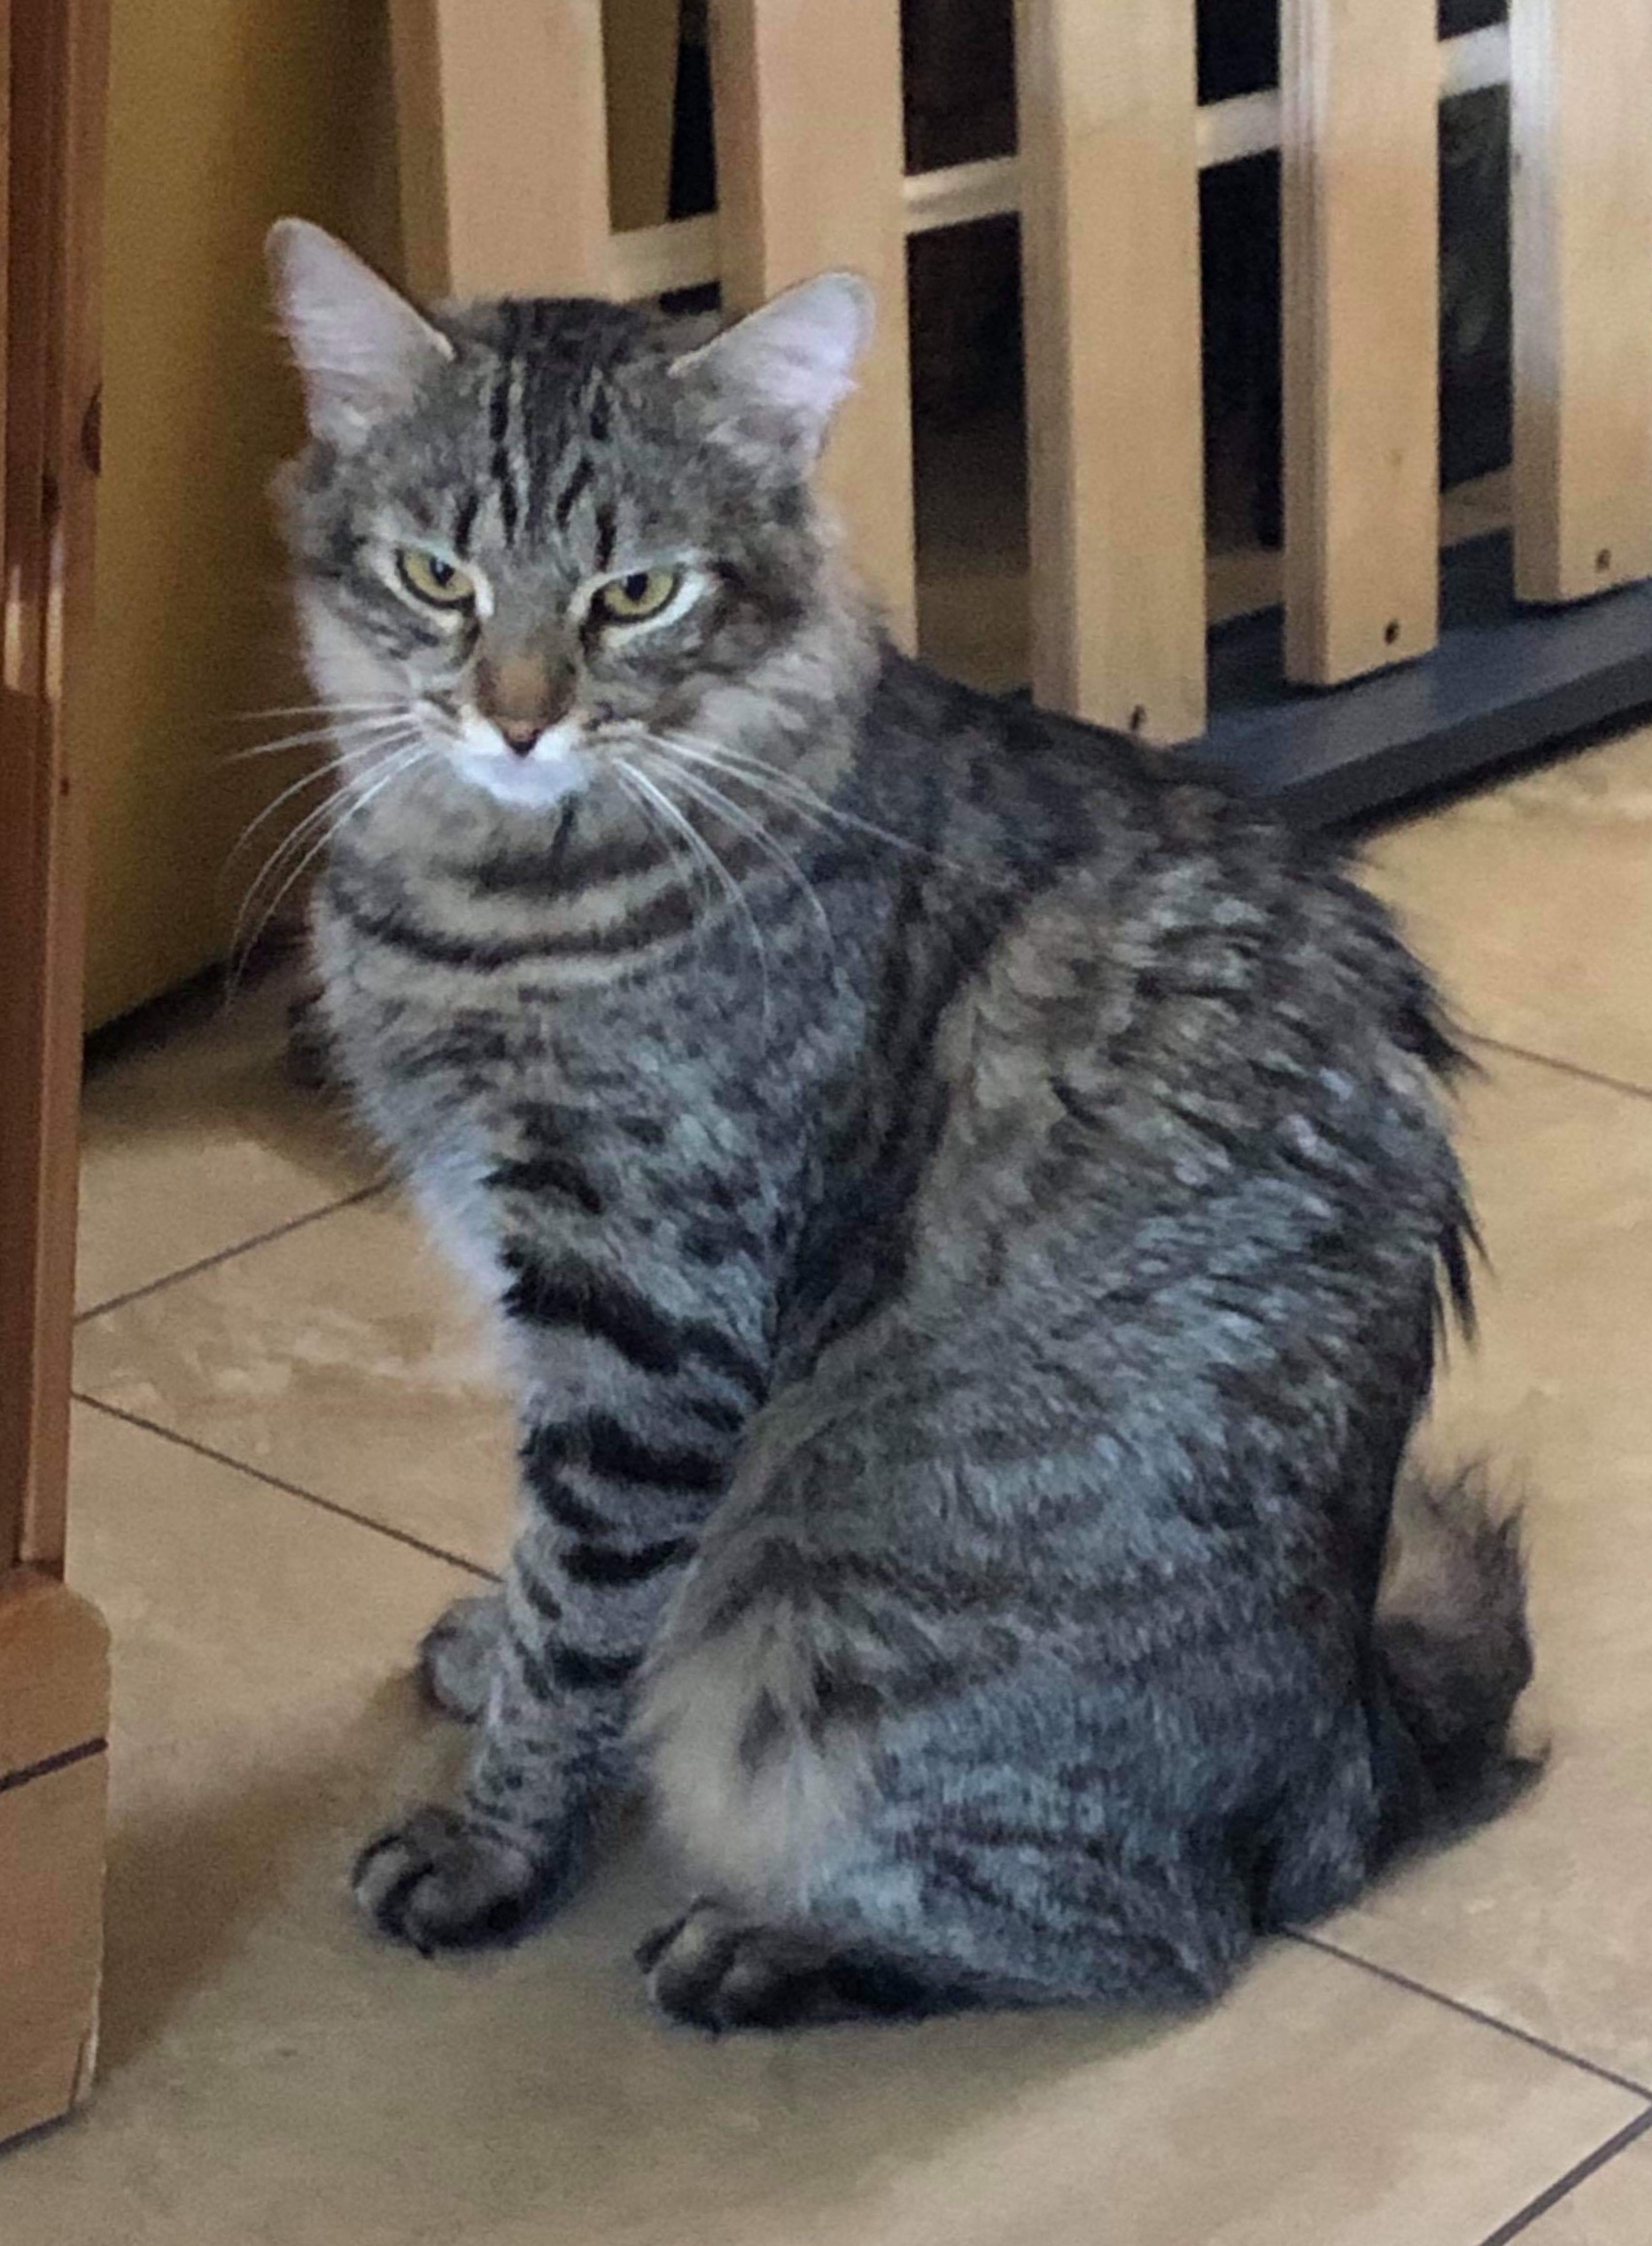 adoptable Cat in Tempe,AZ named Molly